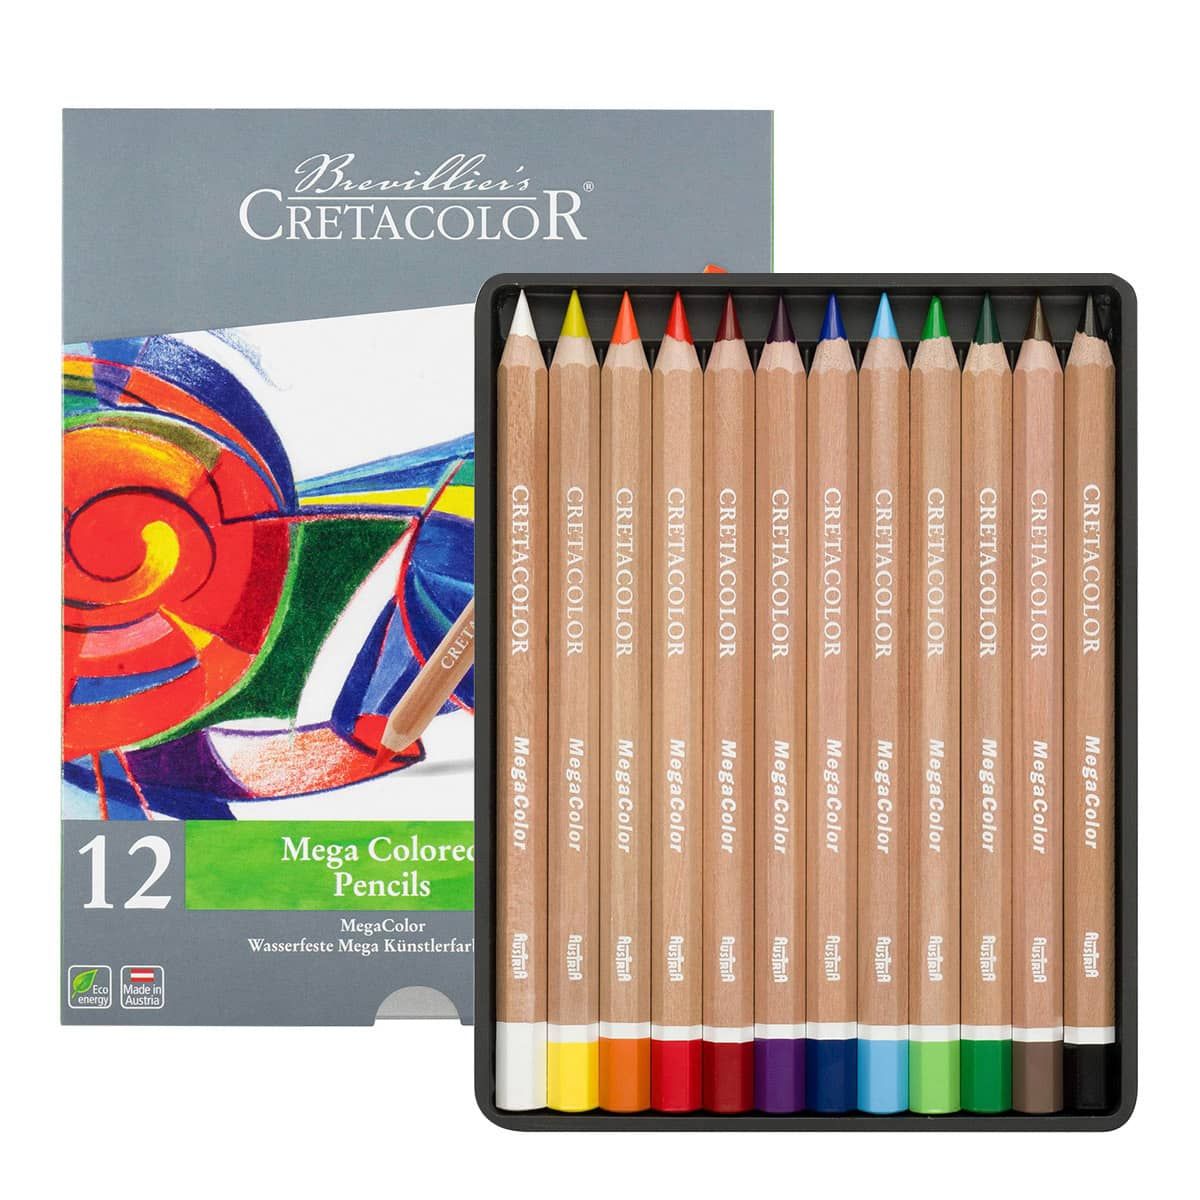 Cretacolor Mega Colored Pencil Tin Set of 12